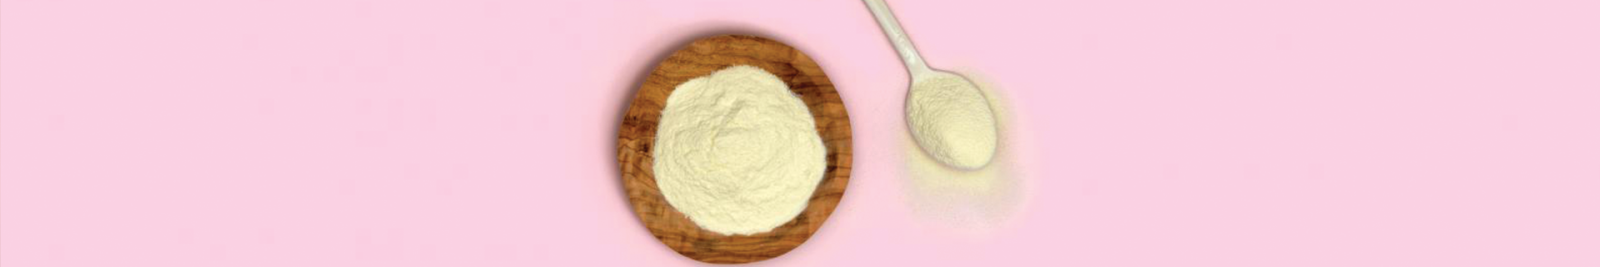 image of buttermilk powder